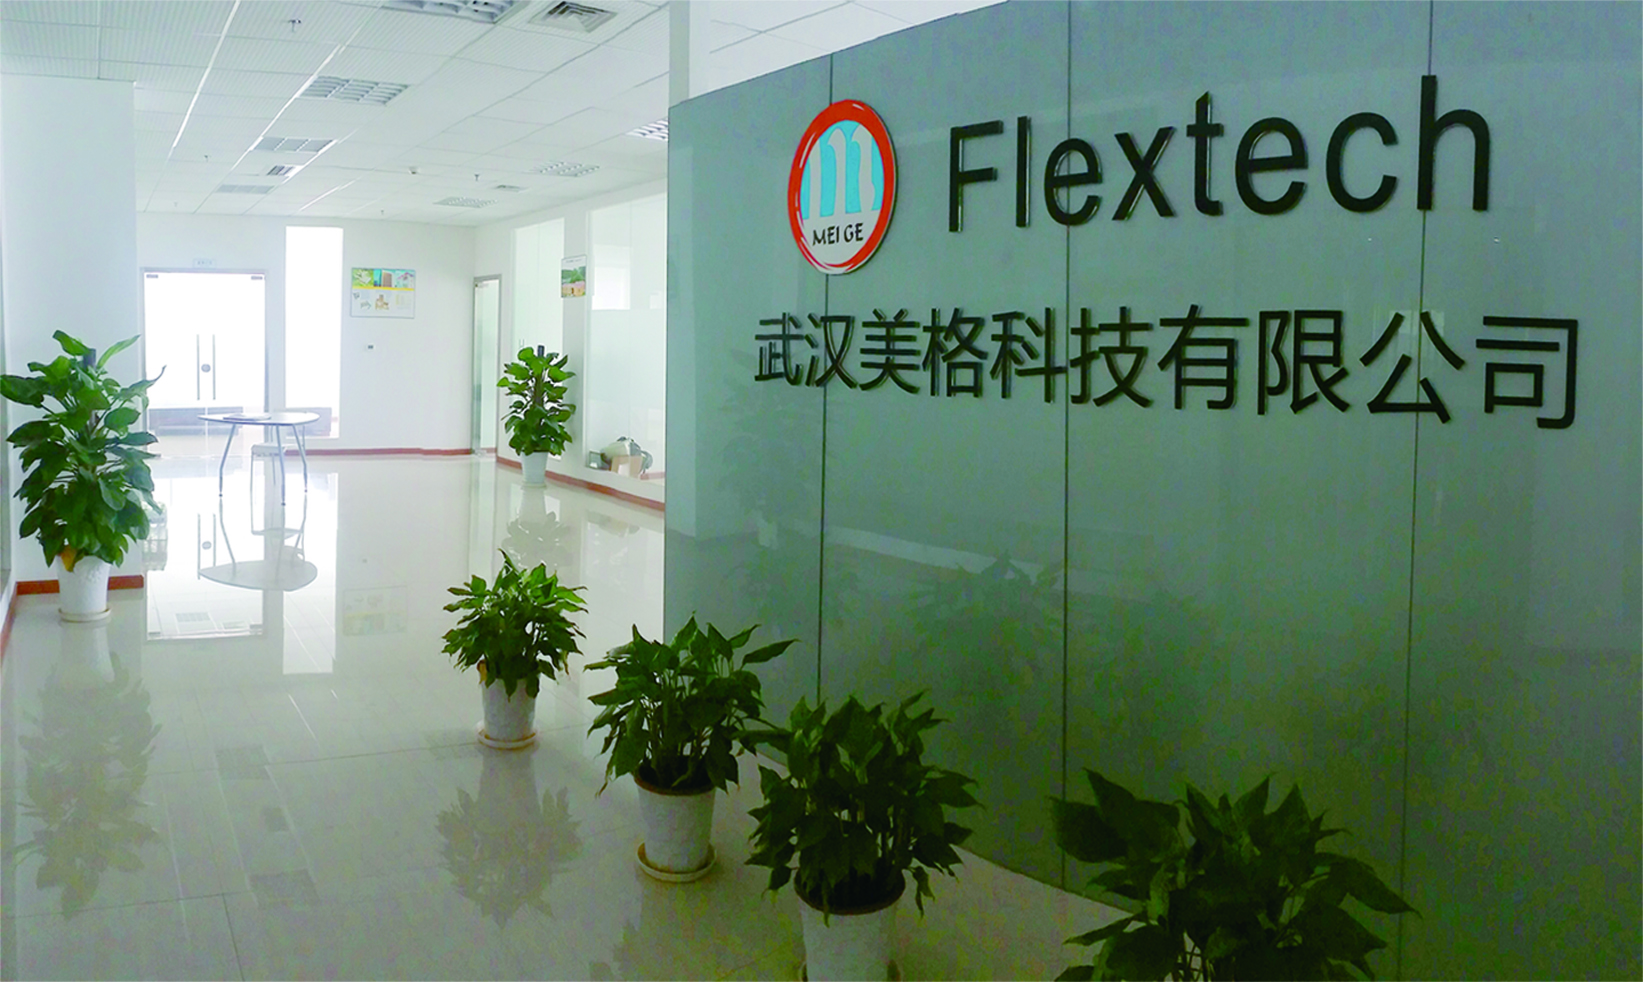 Flextech Company 